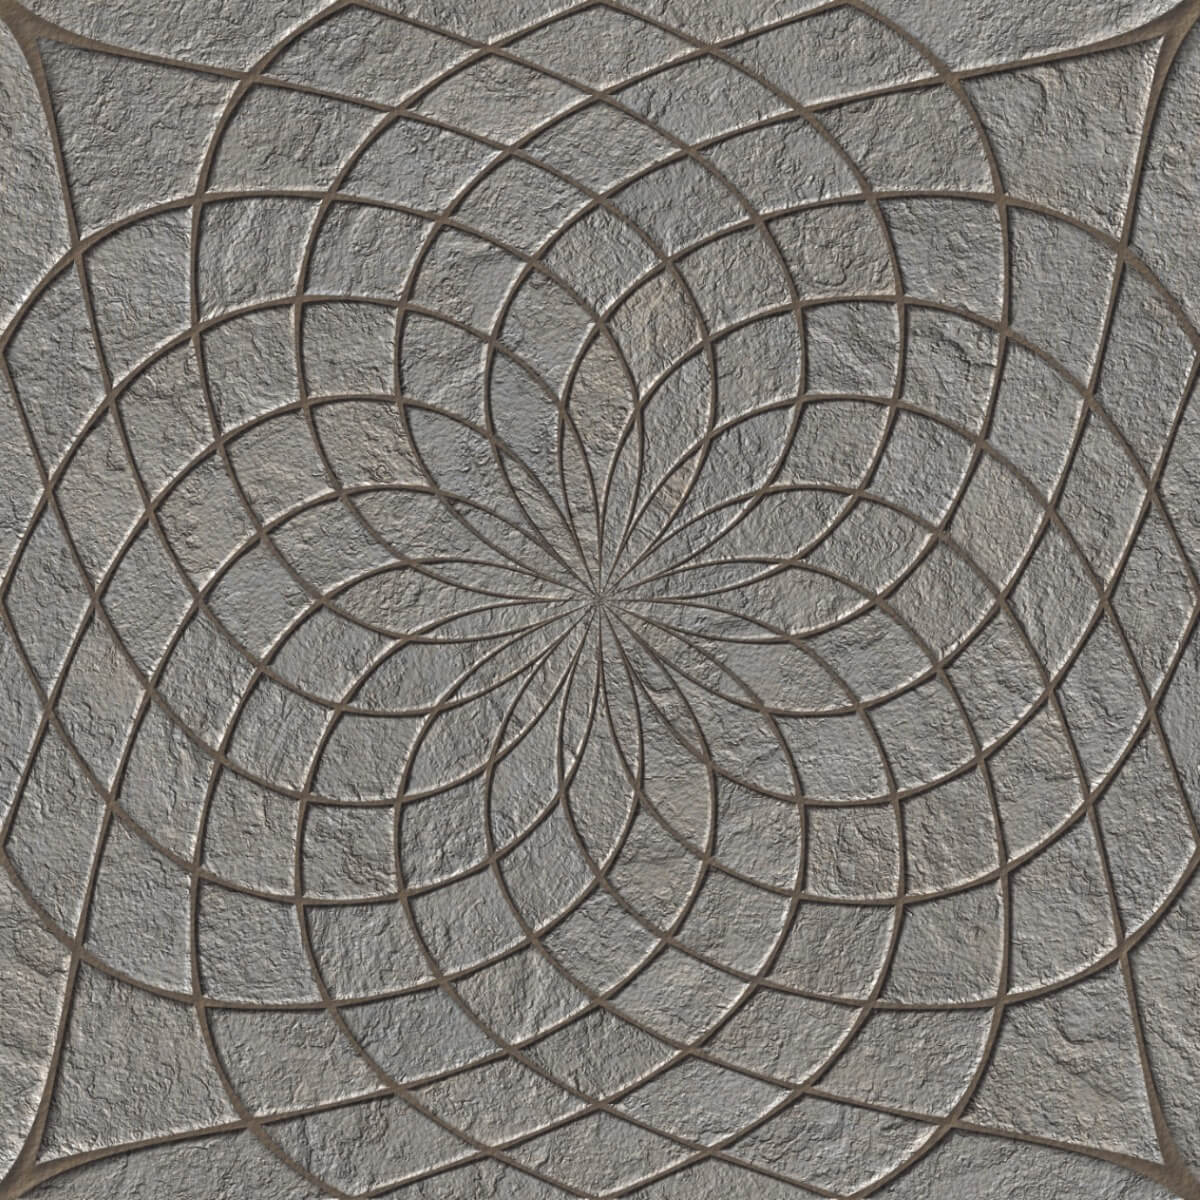 Digital Glazed Vitrified Tiles for false